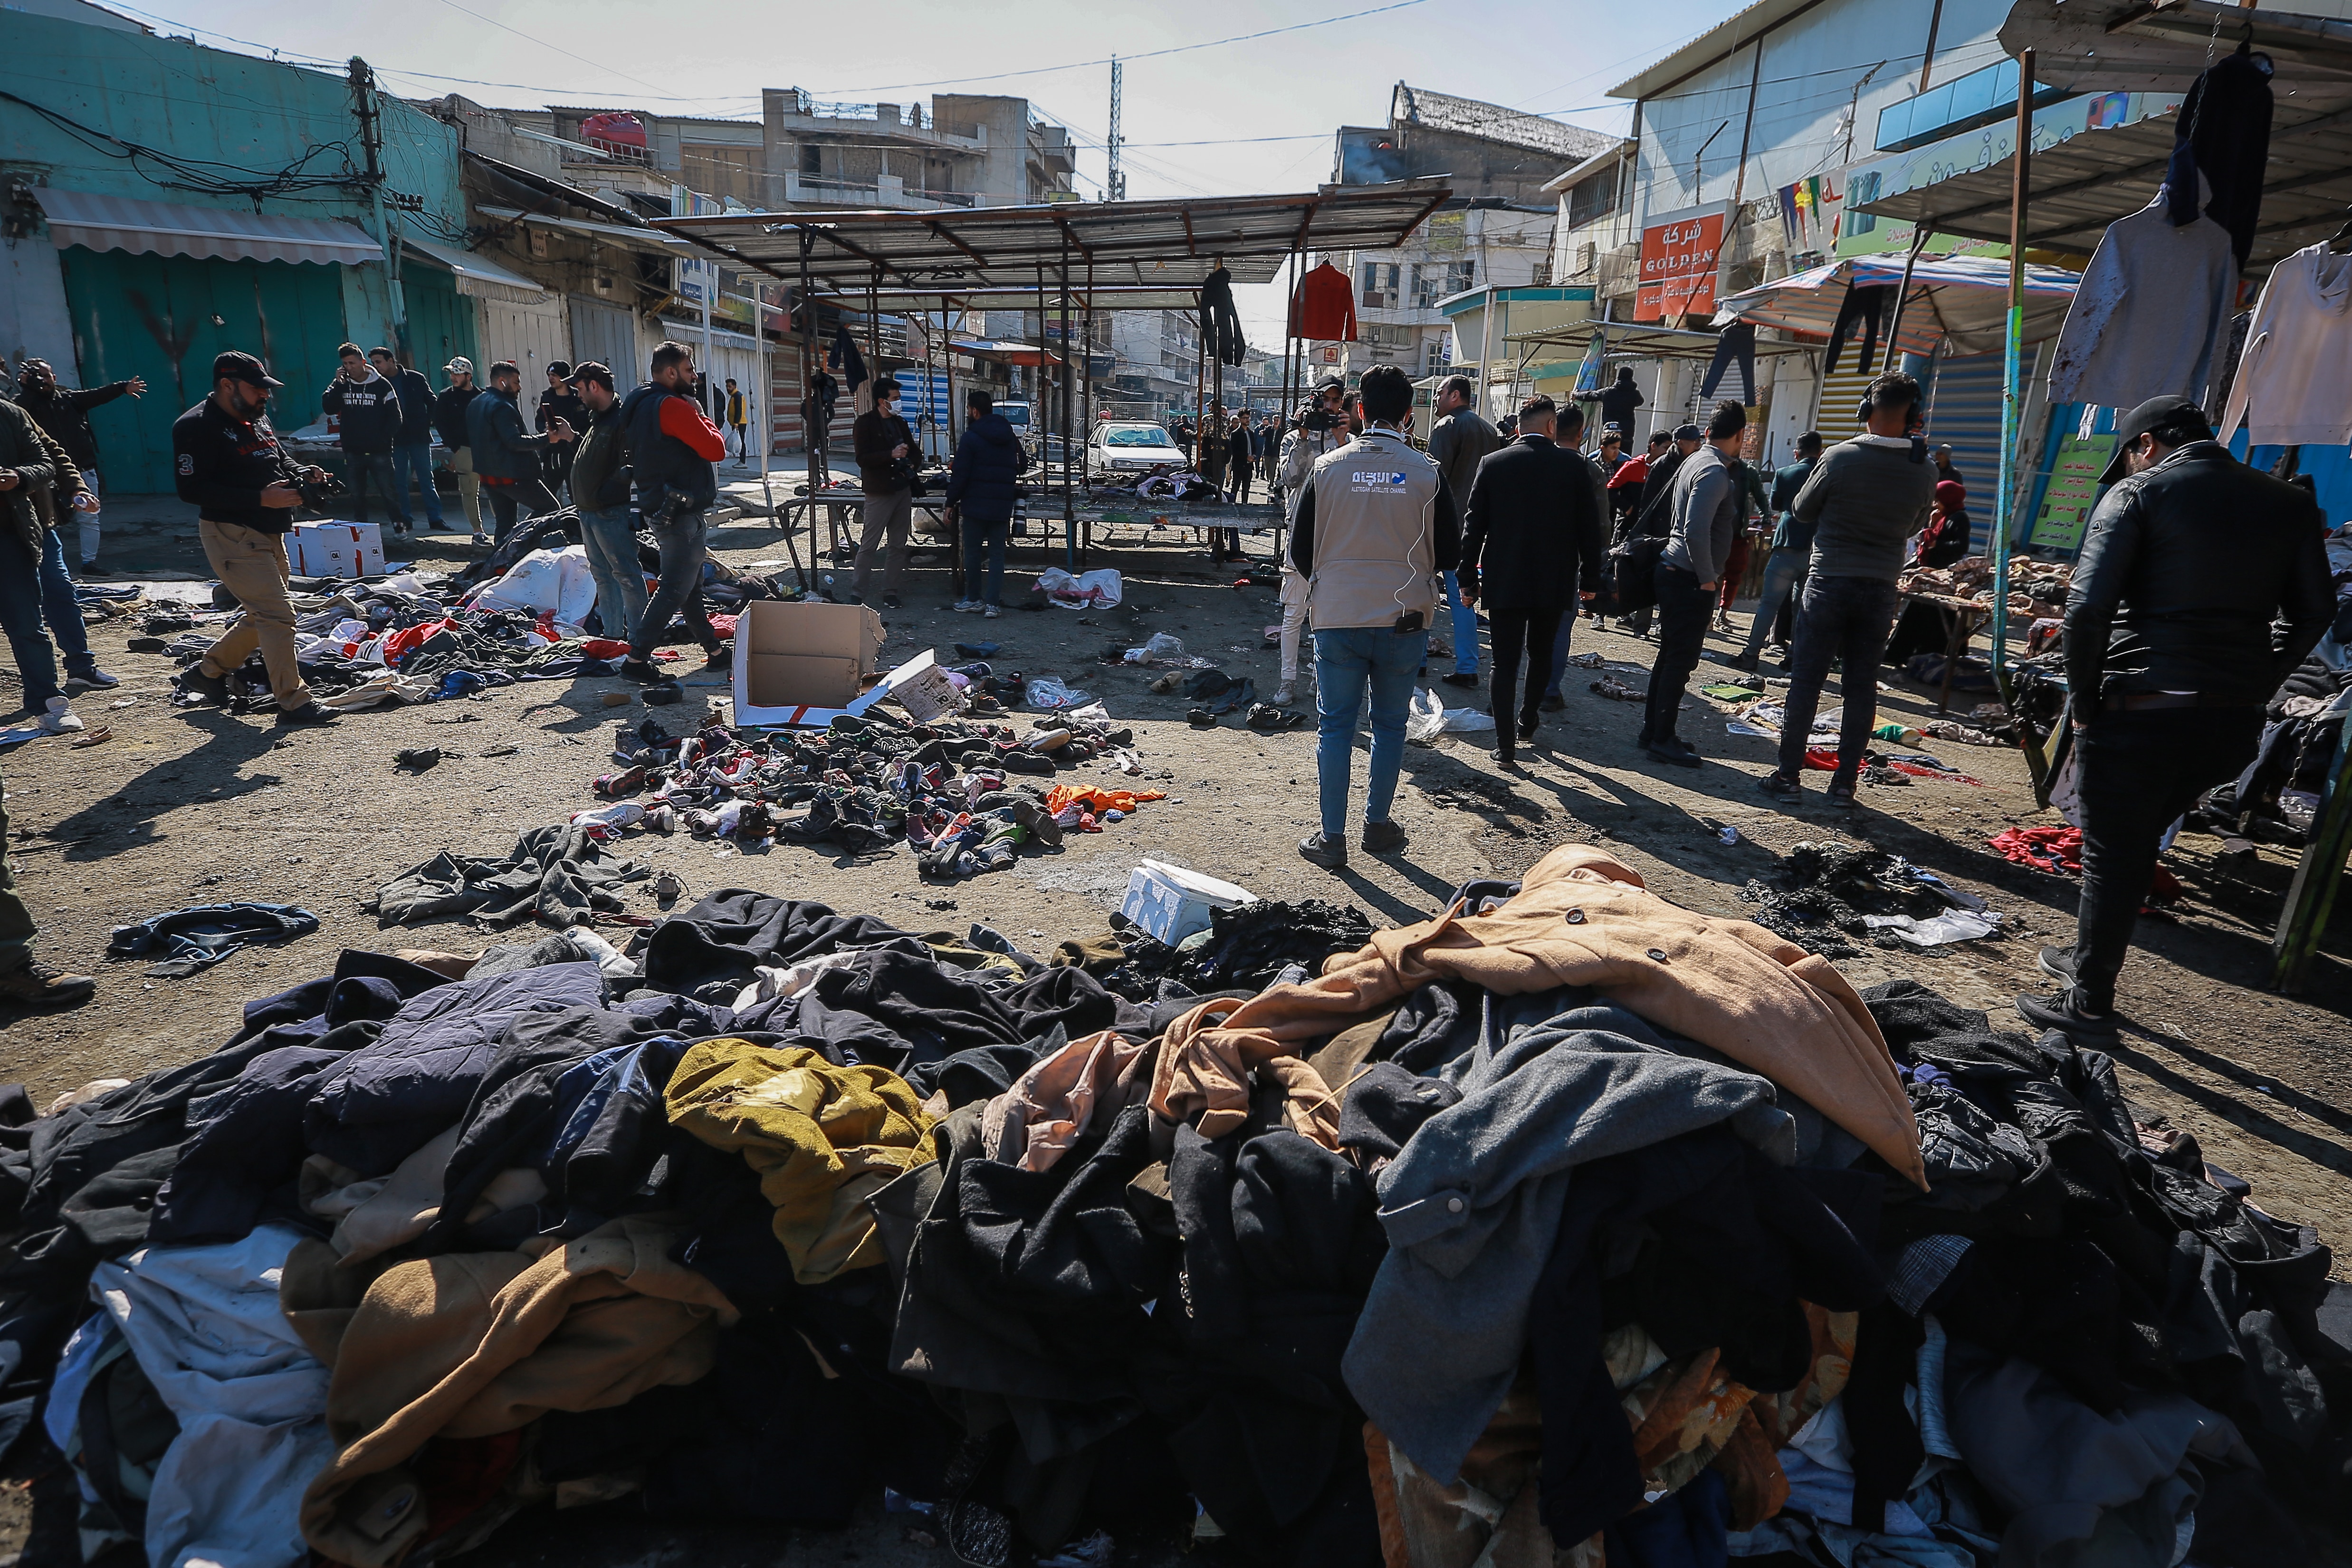 Bei einem seltenen Selbstmordanschlag wurden am Donnerstag auf einem überfüllten Markt im Zentrum von Bagdad 32 Menschen getötet und 110 verletzt, teilte die irakische Regierung mit.